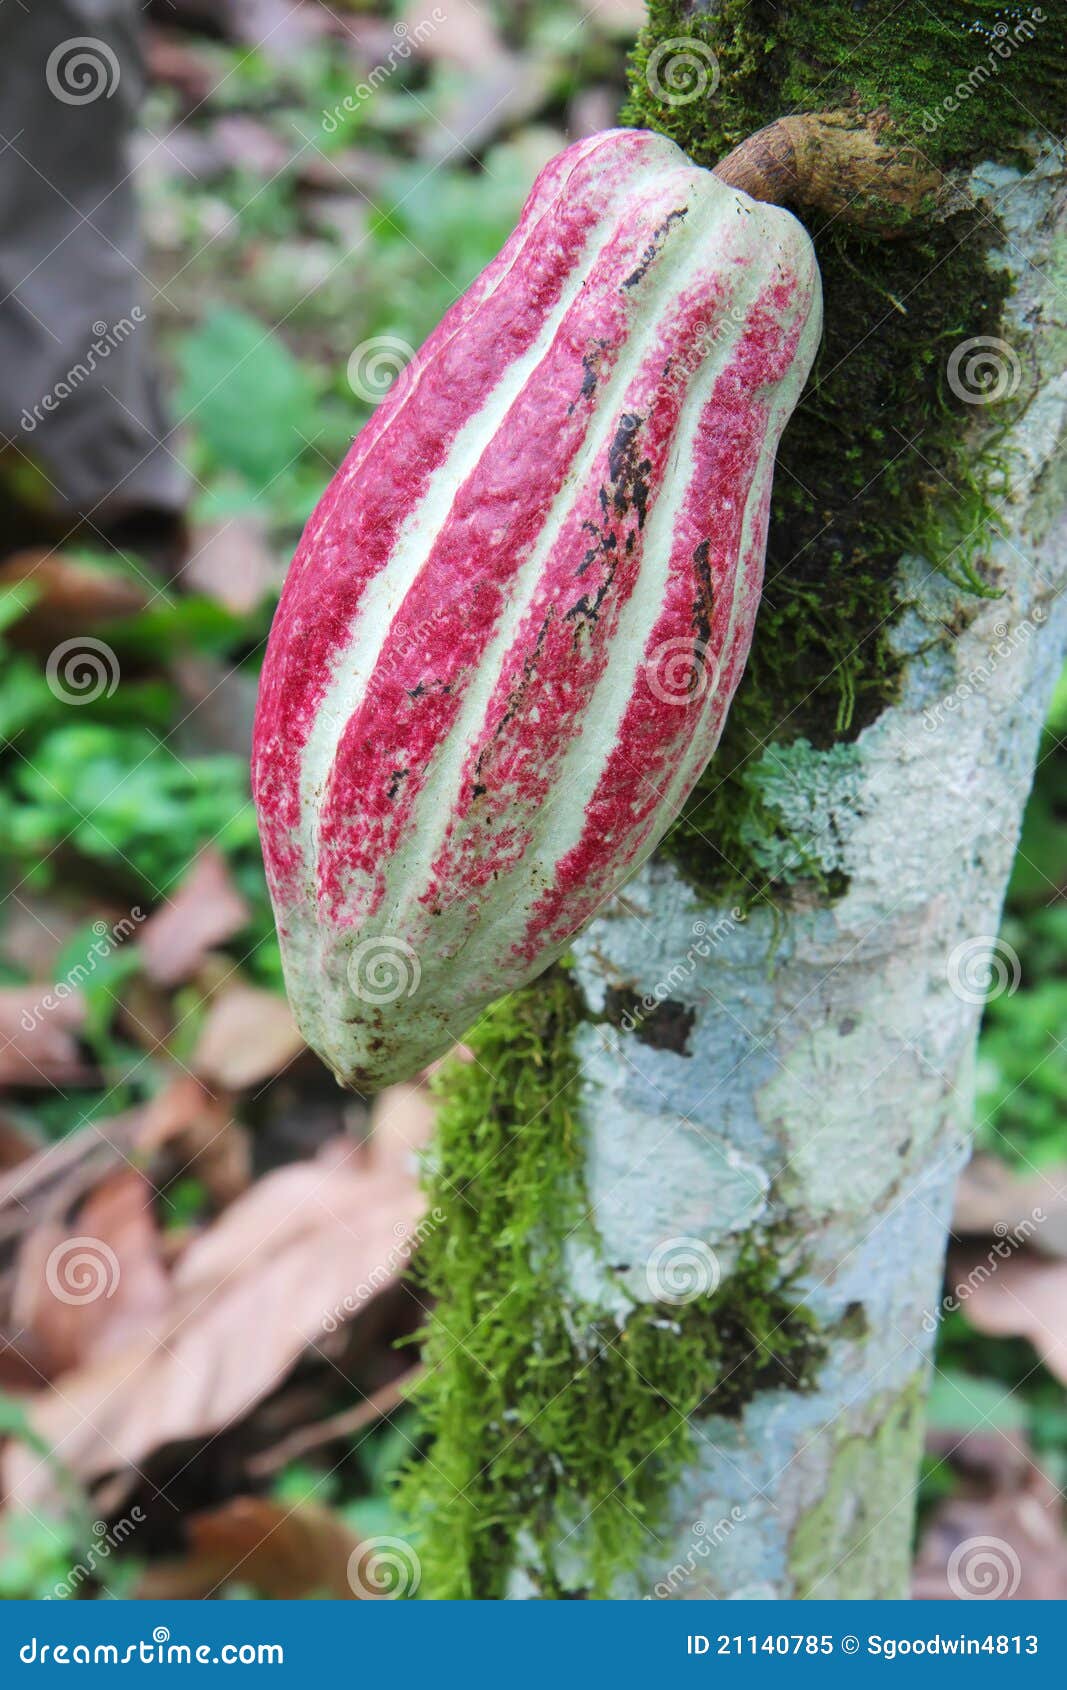 pod of arriba cacao on a tree in ecuador